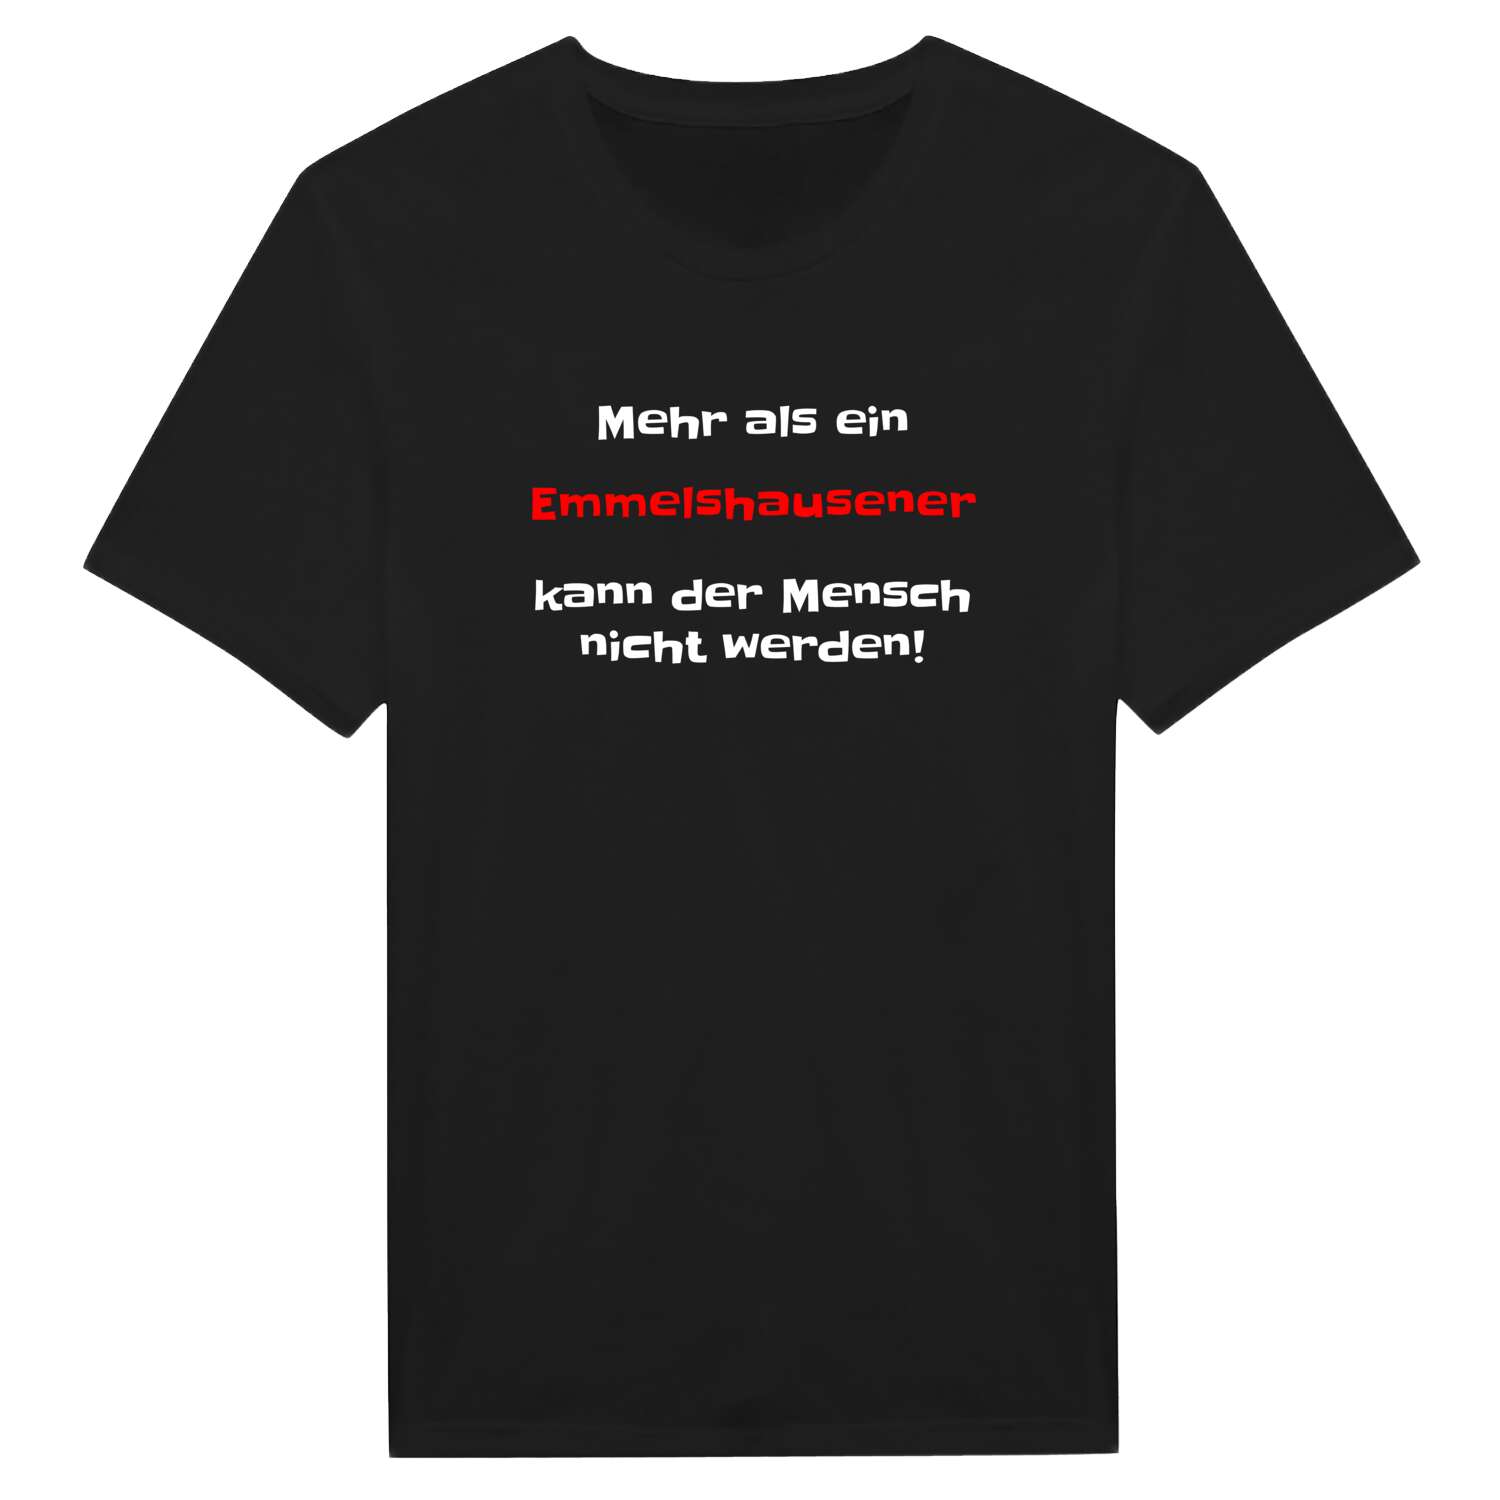 Emmelshausen T-Shirt »Mehr als ein«